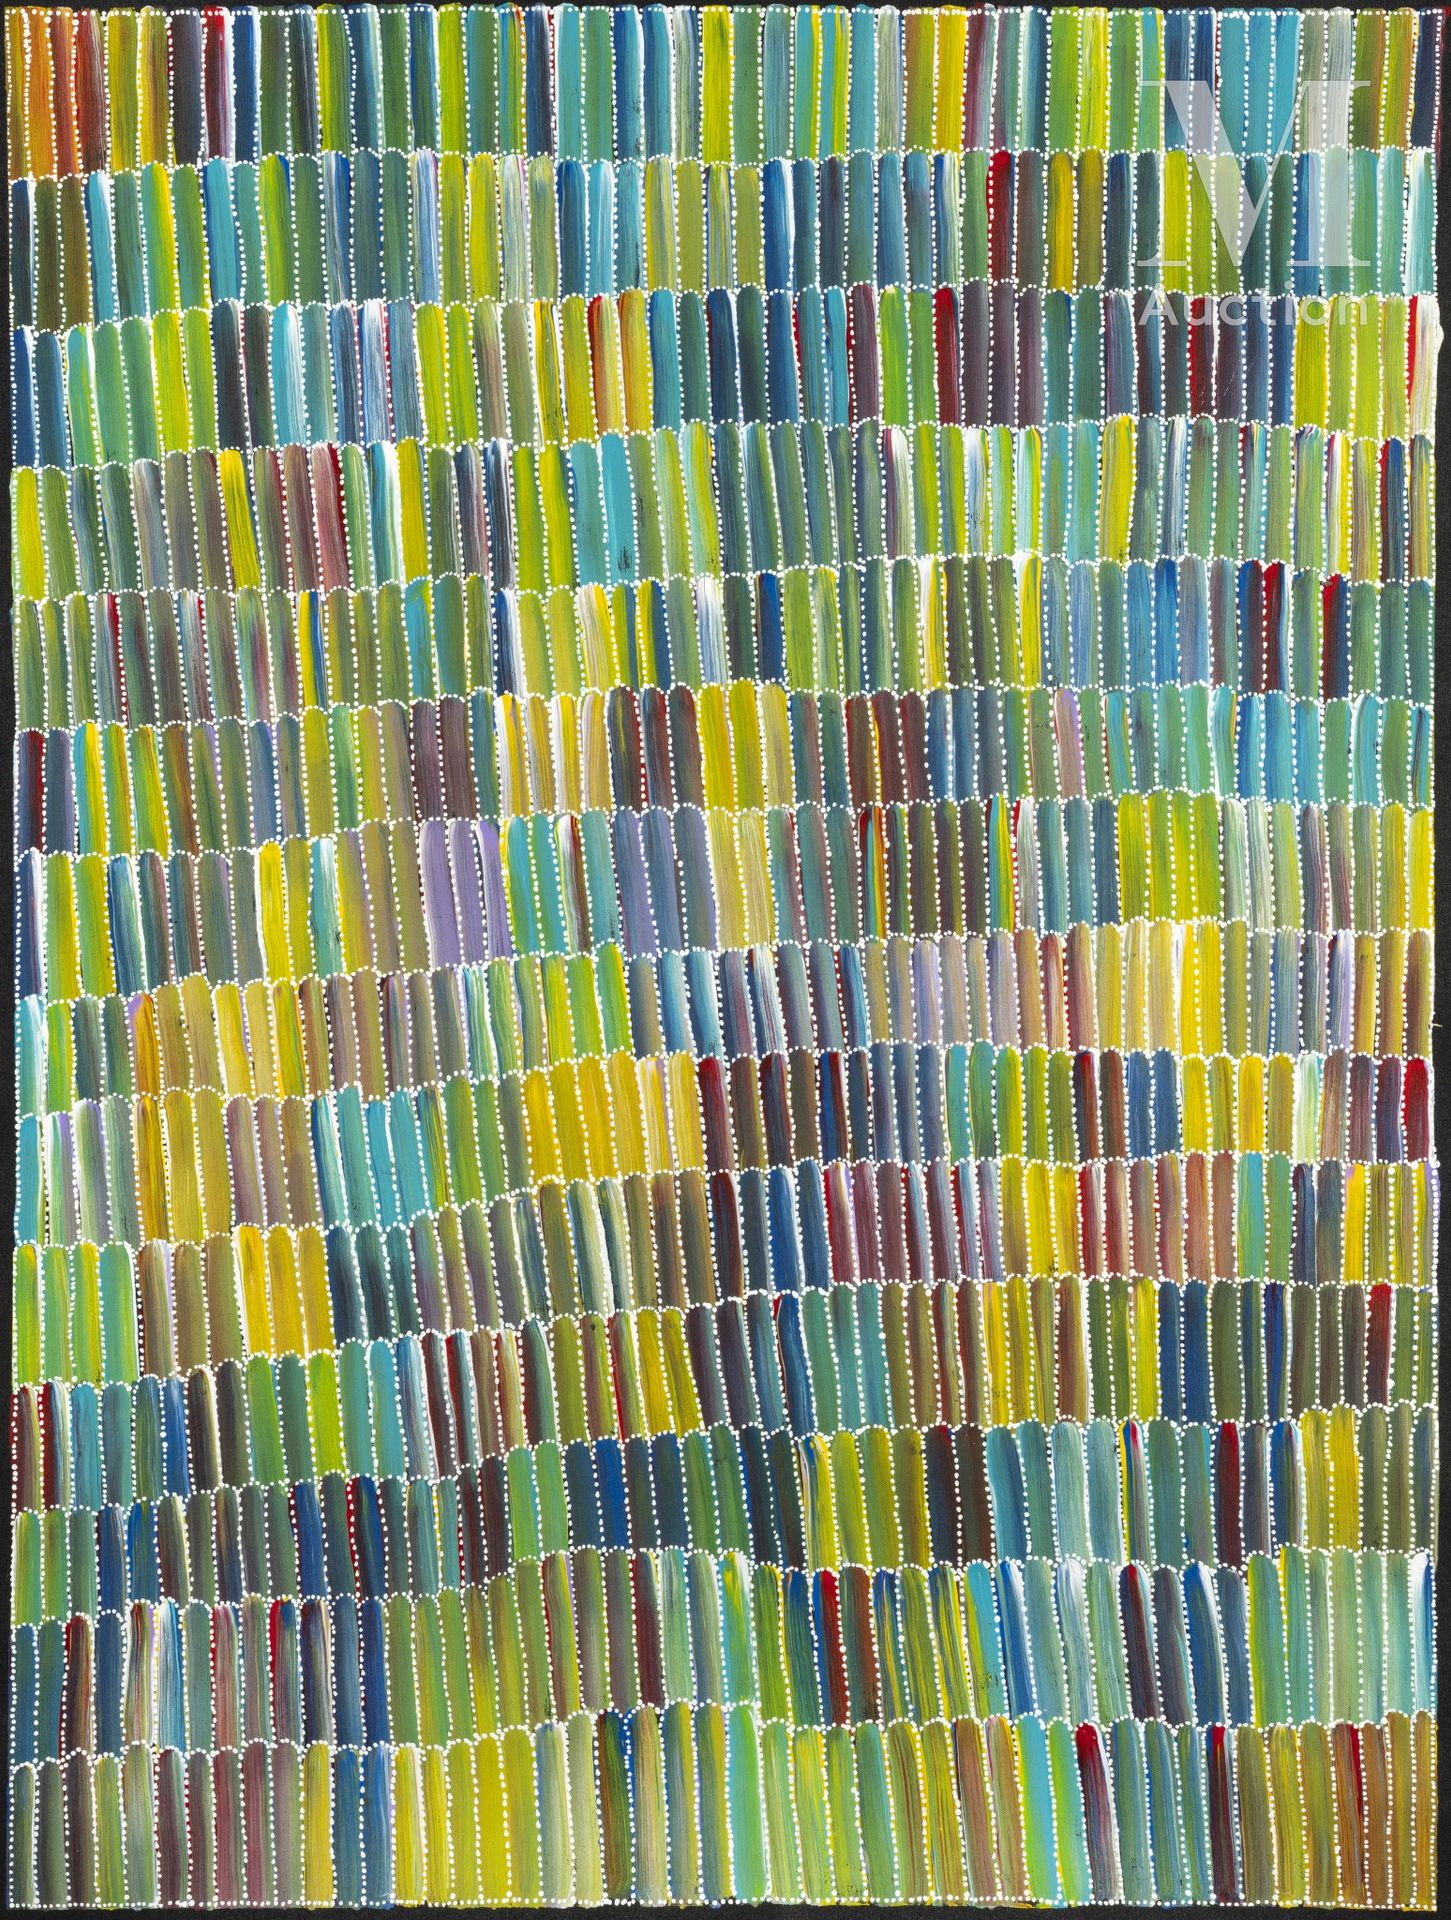 Jeannie Mills Pwerle (1965 - ) Bush Yam,2021

Acrylique sur toile - 94 x 70 cm

&hellip;